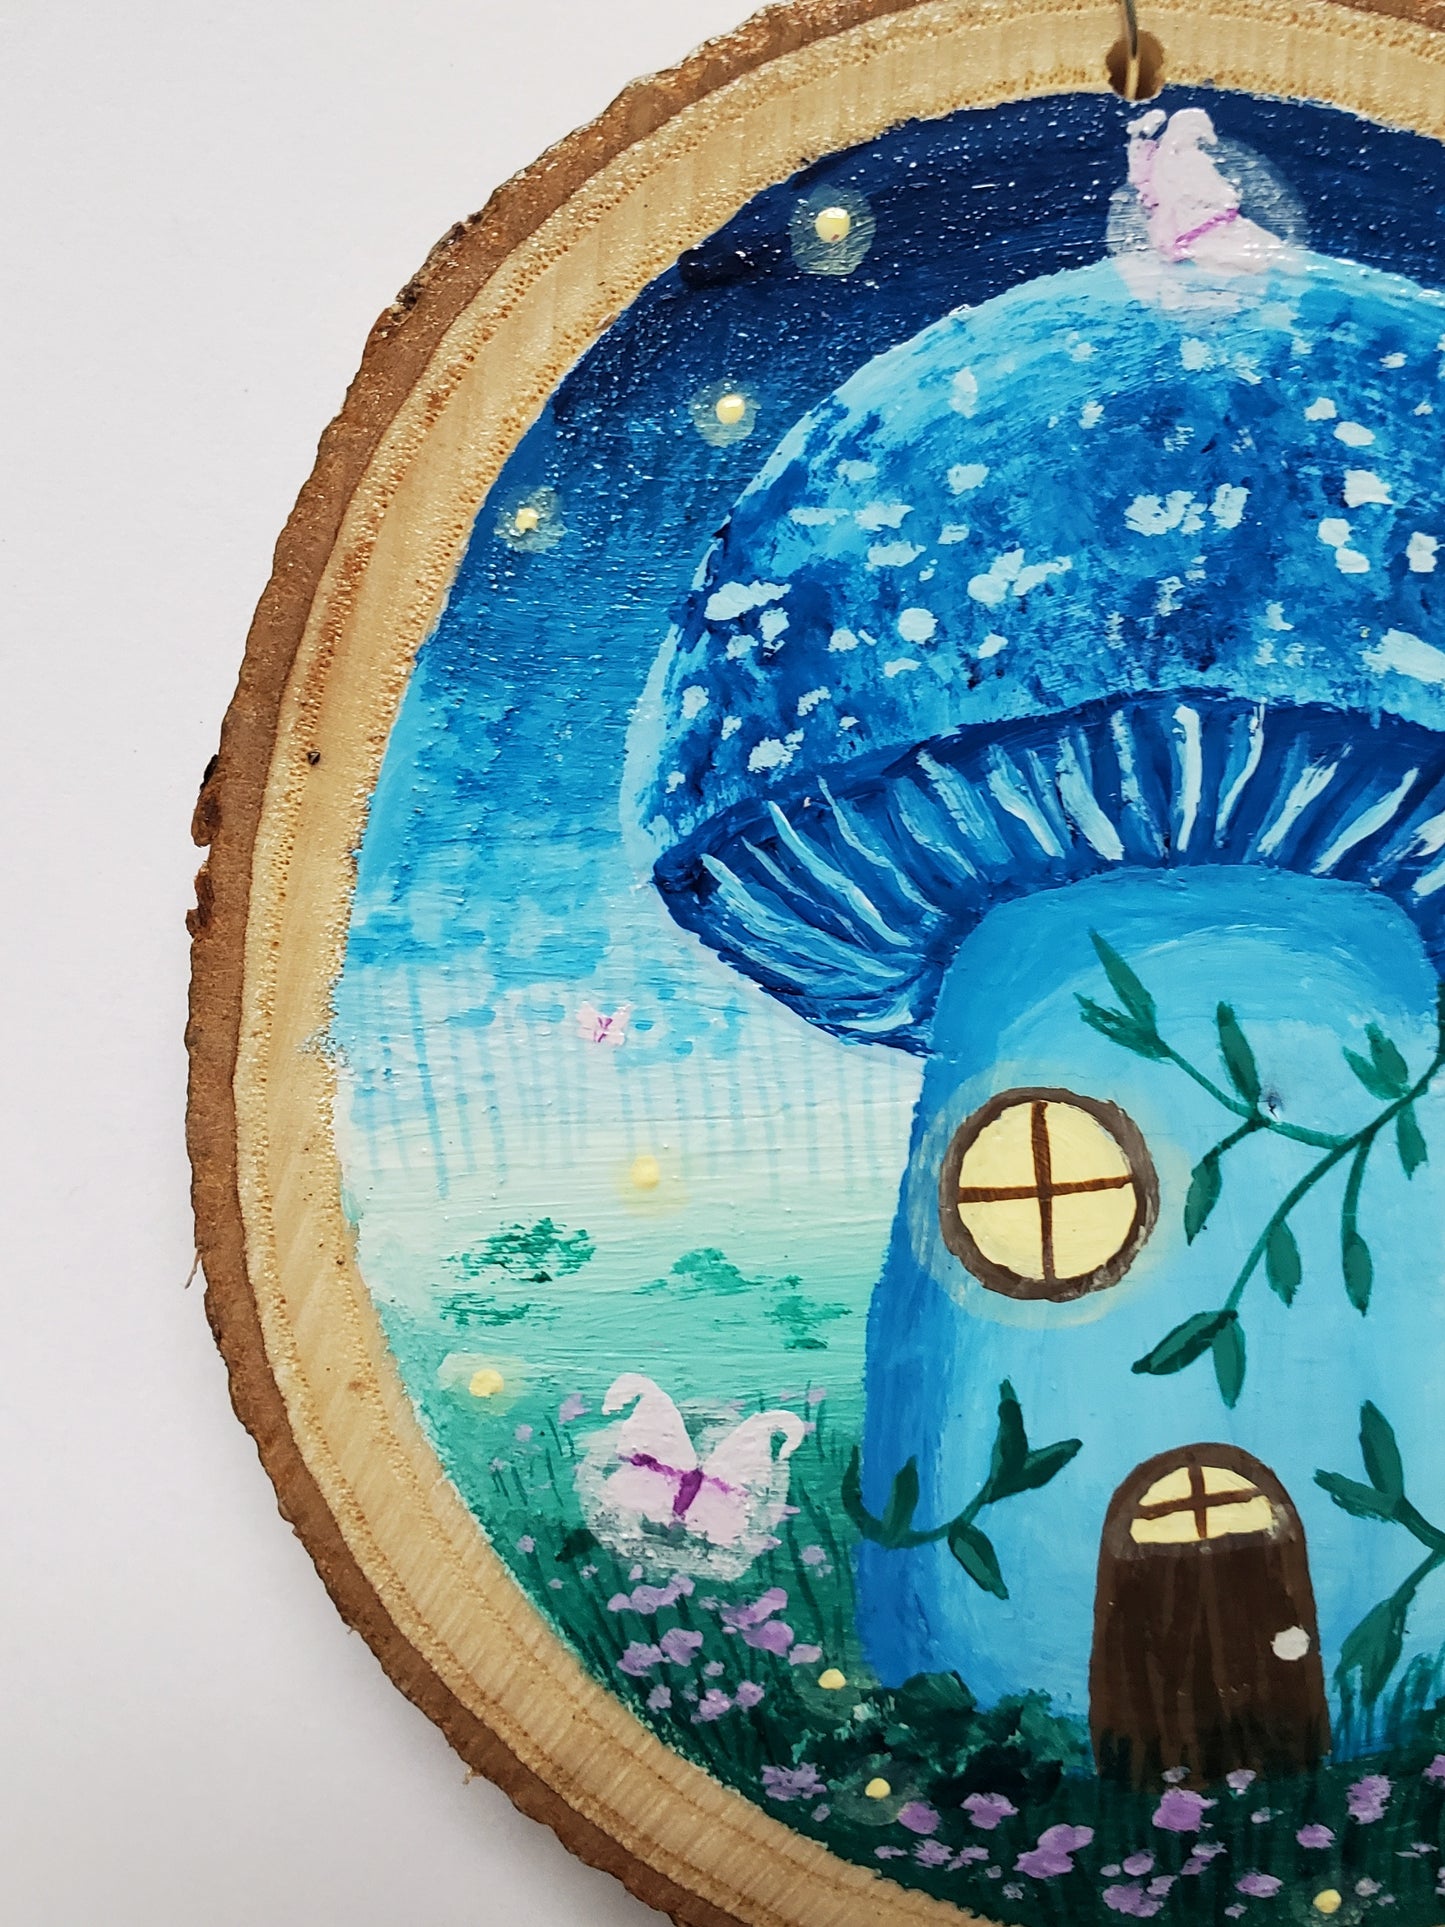 Blue Mushroom Cottage Painting on Wood